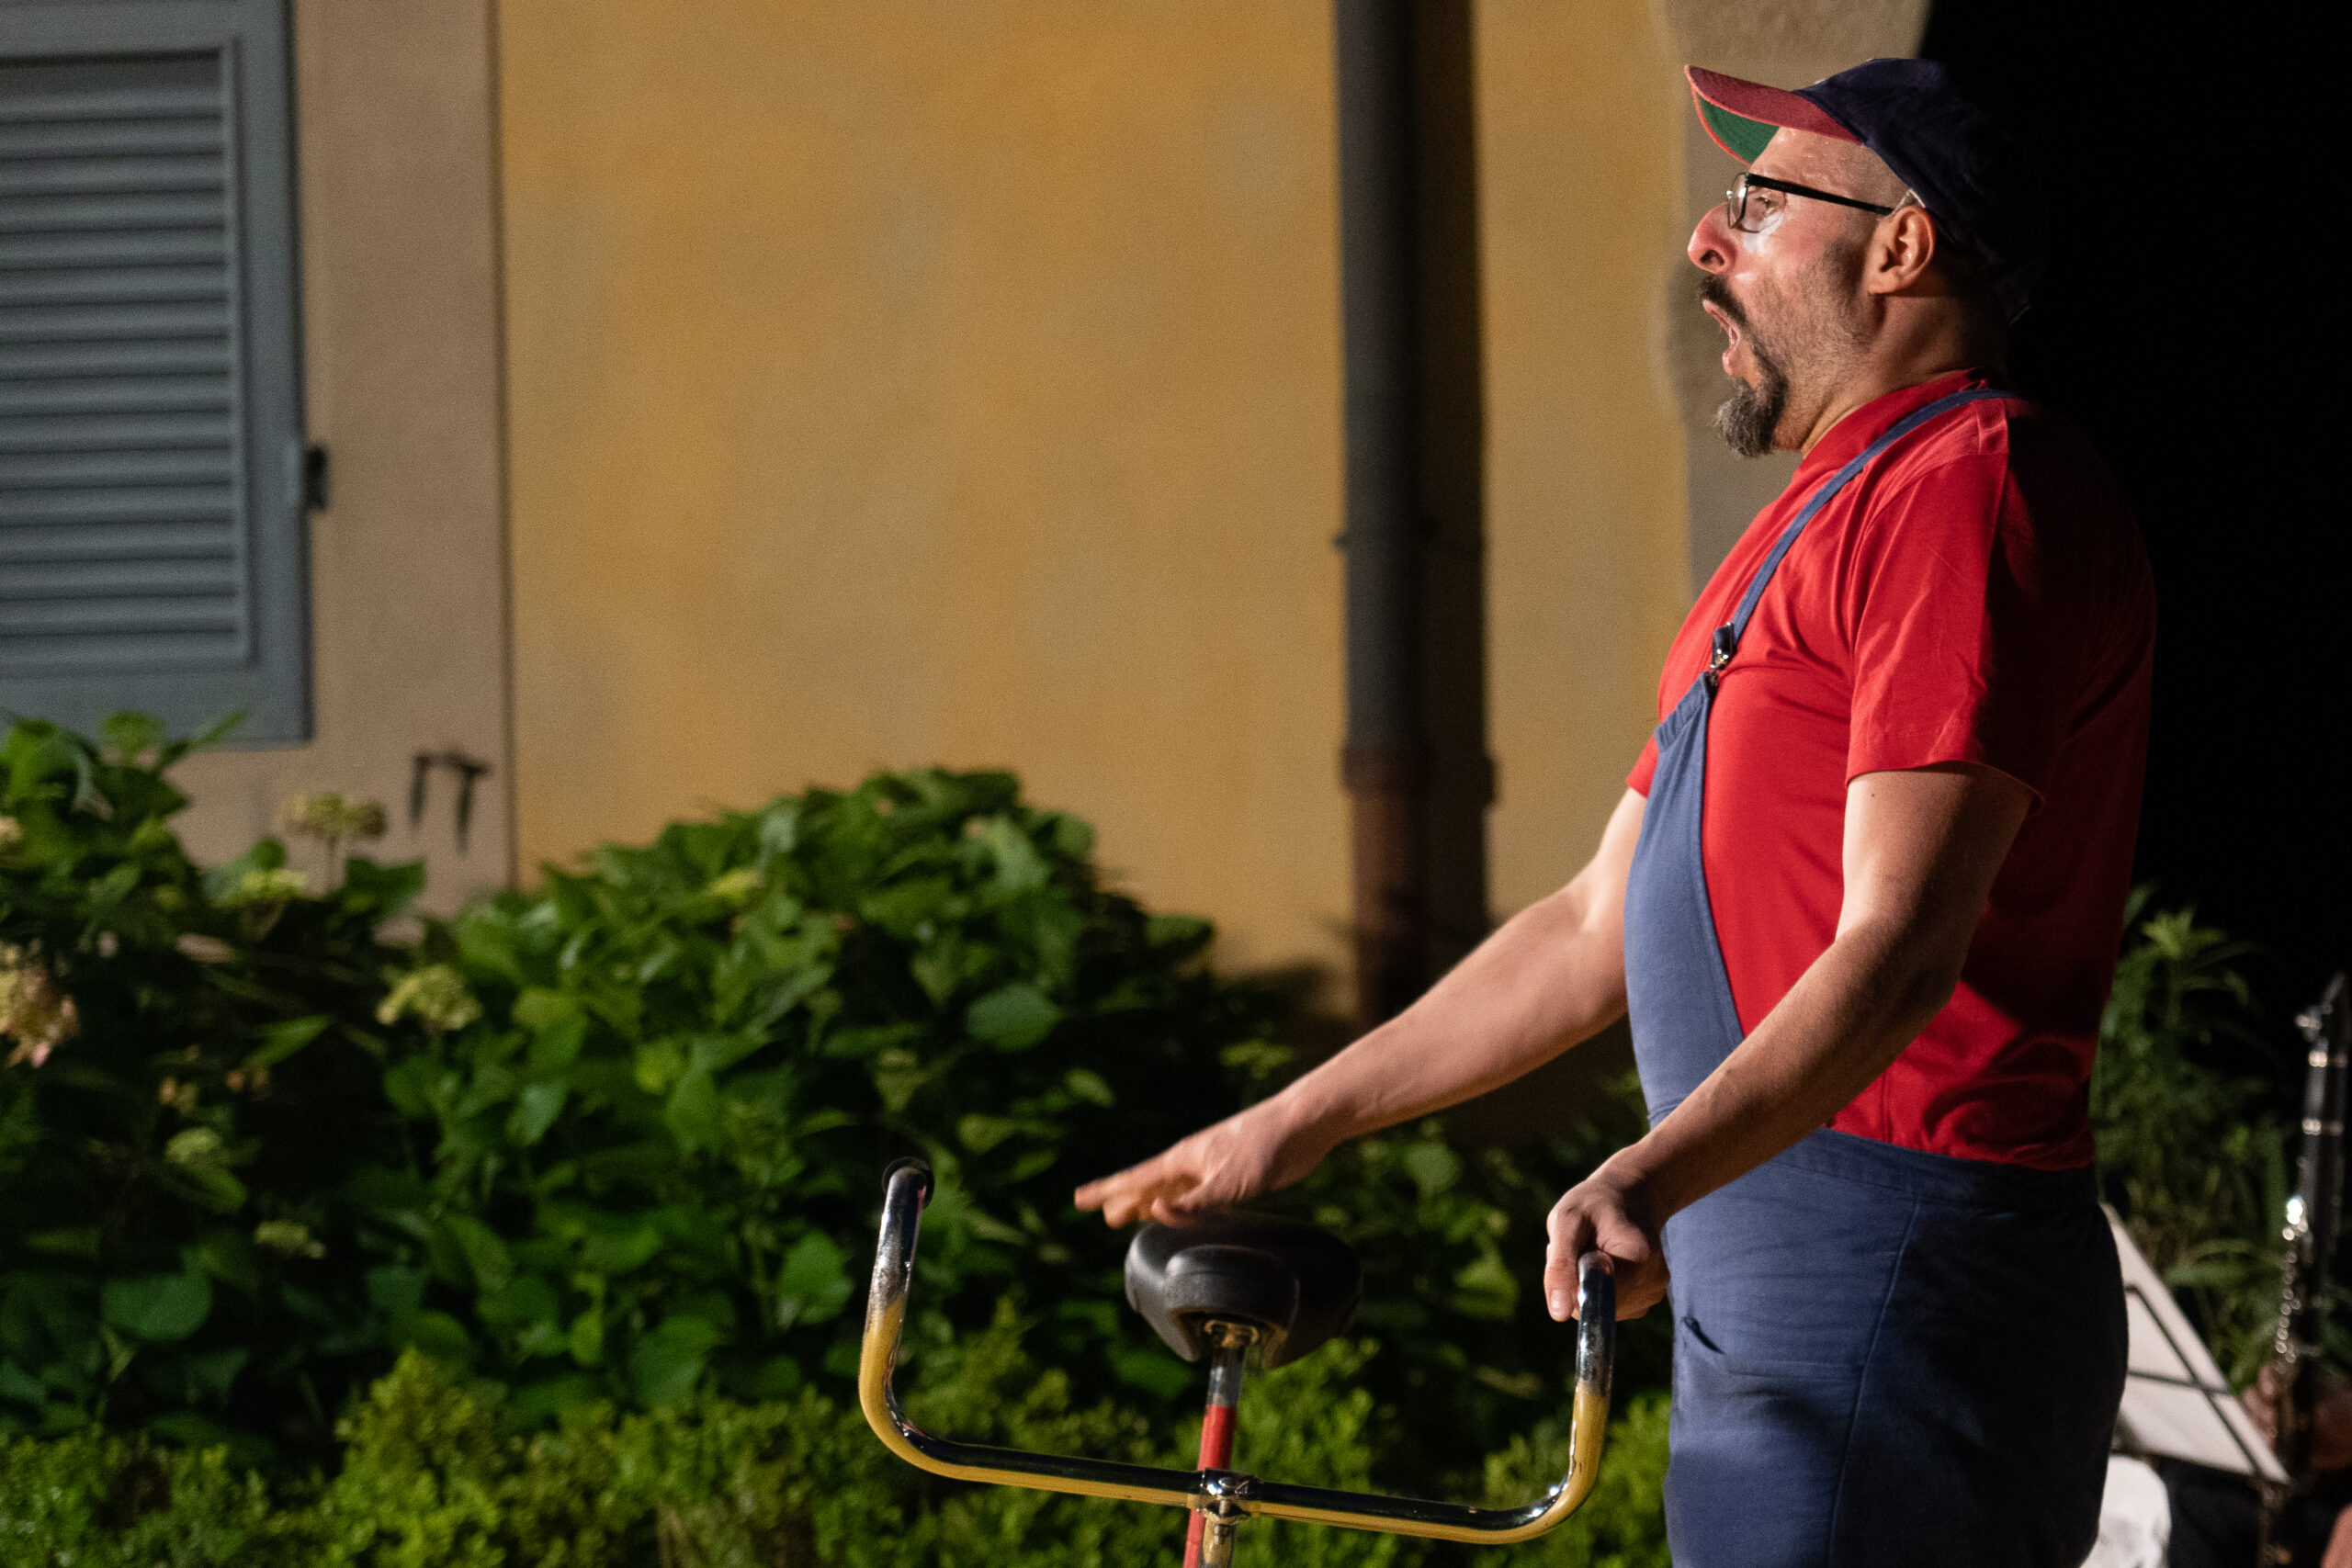 Un clown con una maglia rossa e una salopette blu regge una bicicletta.